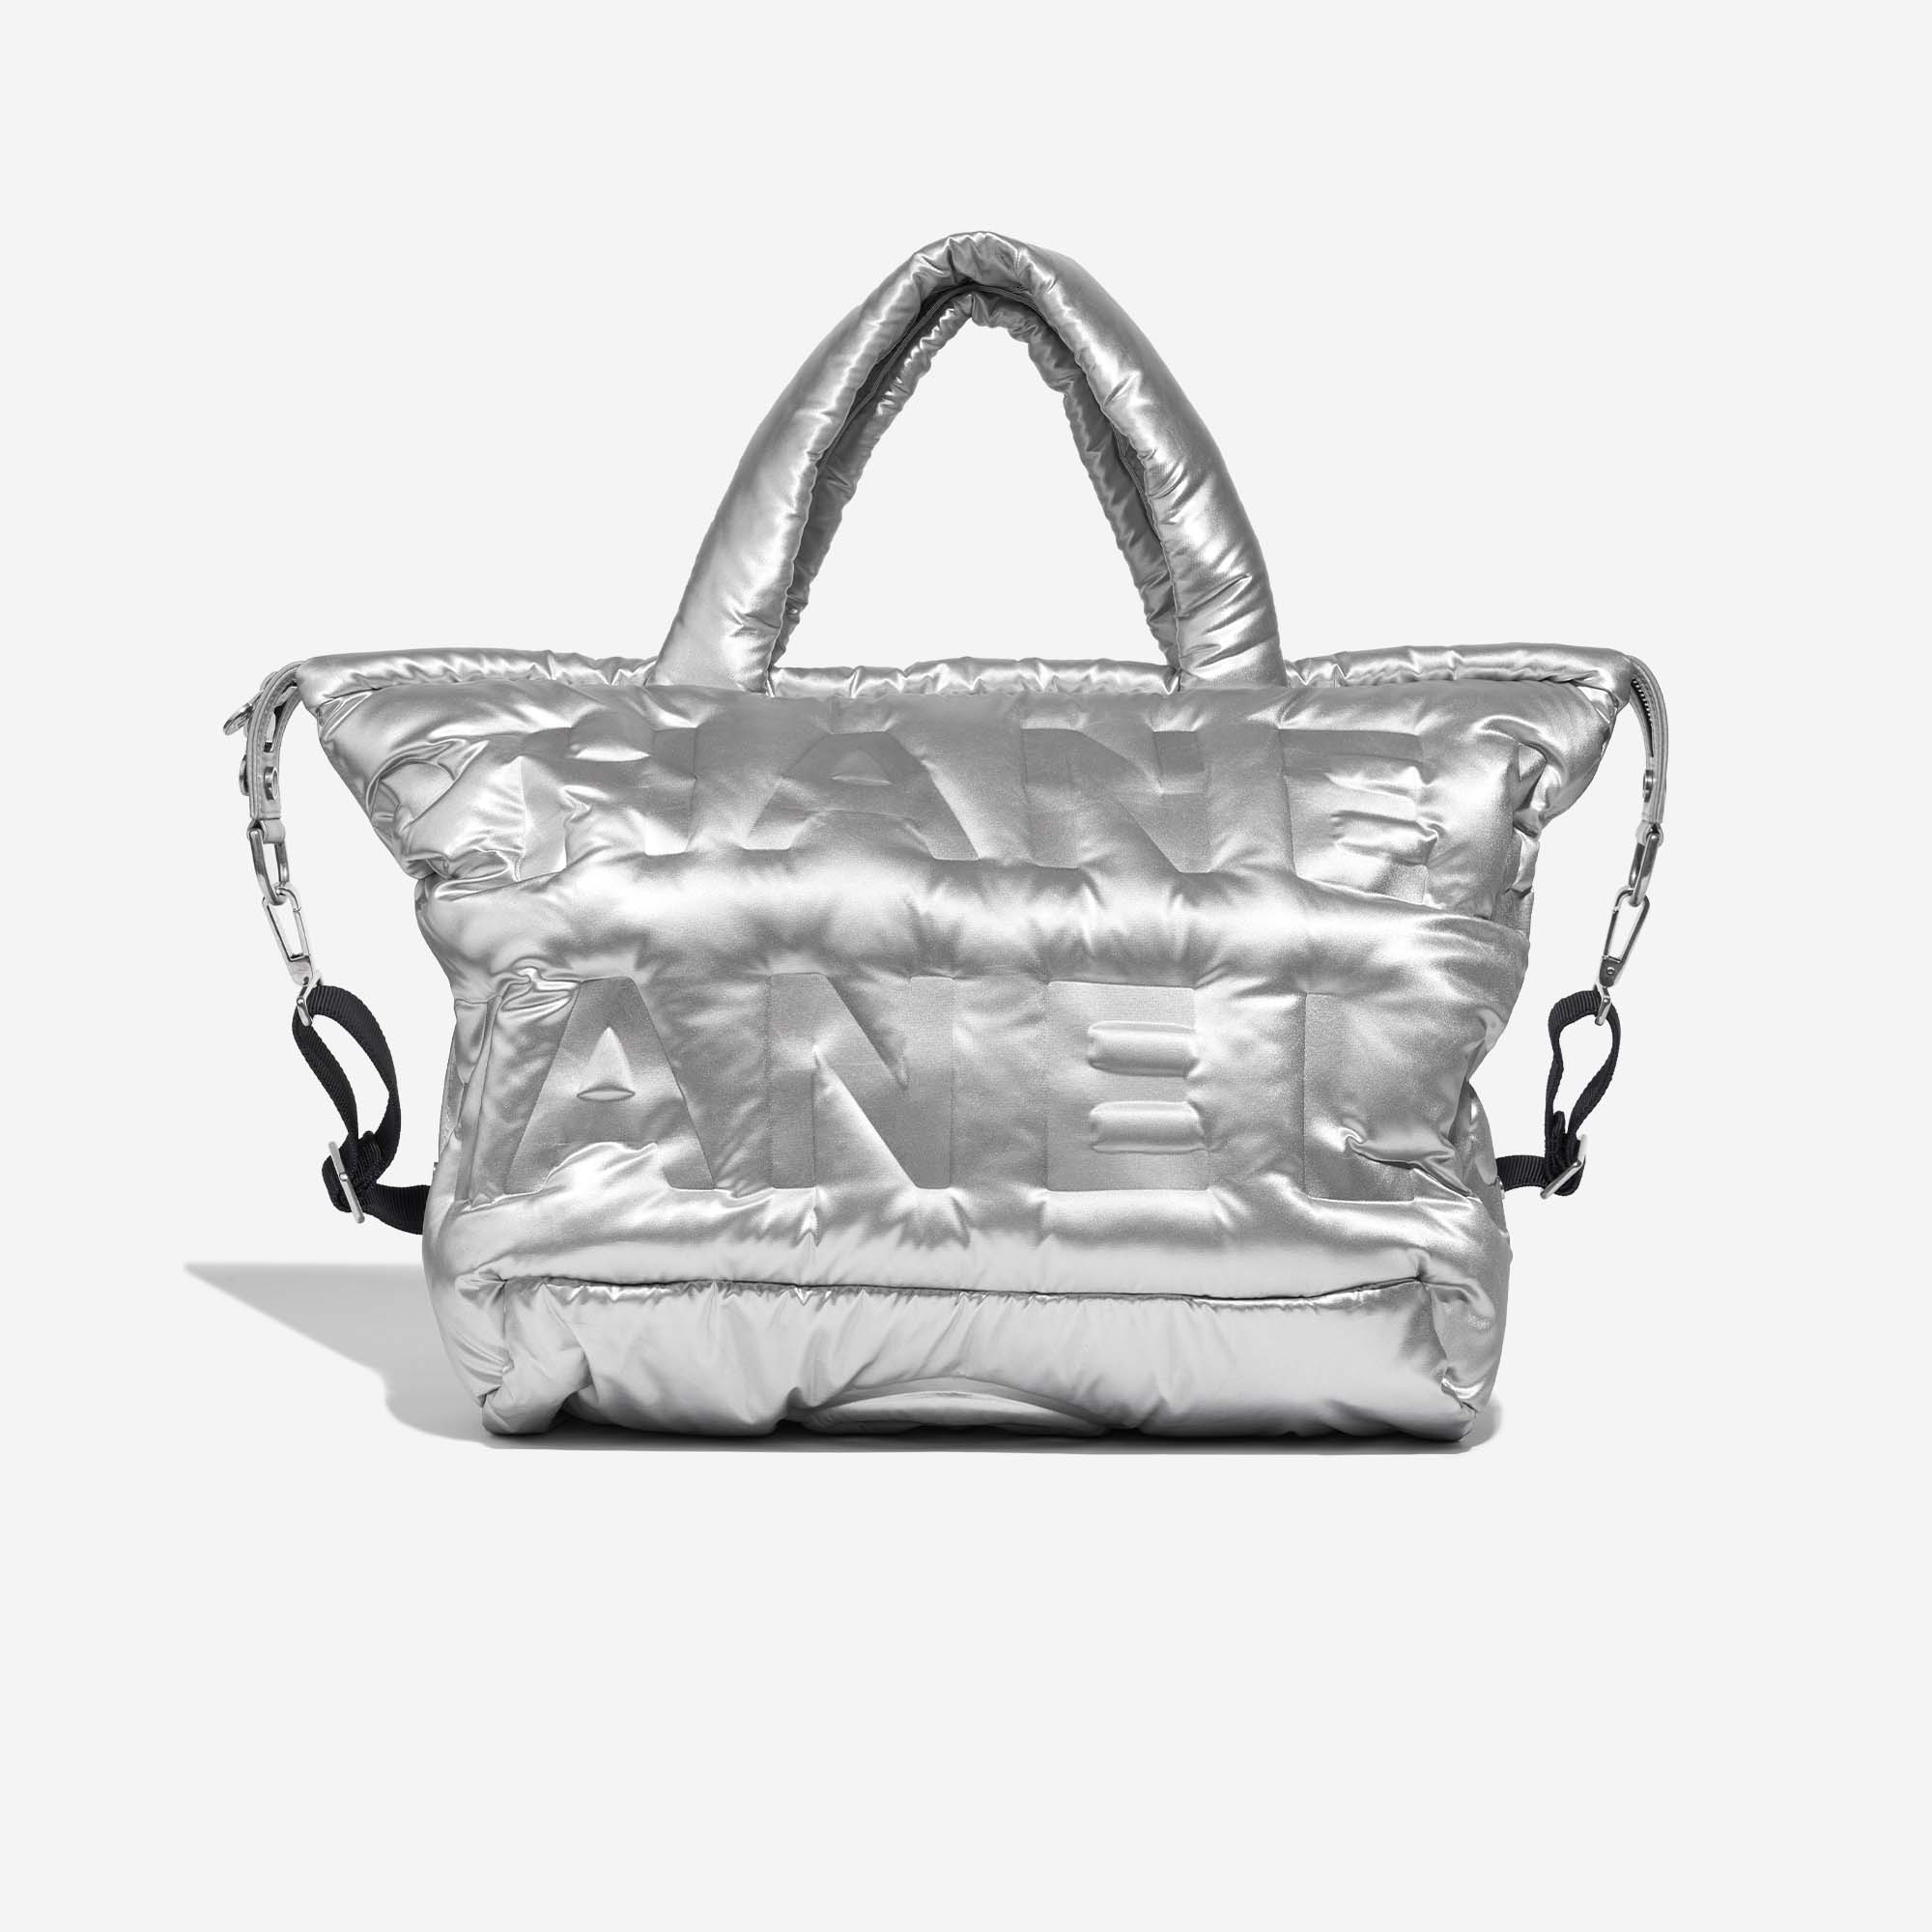 Chanel ShoppingTote Silver Front | Verkaufen Sie Ihre Designertasche auf Saclab.com